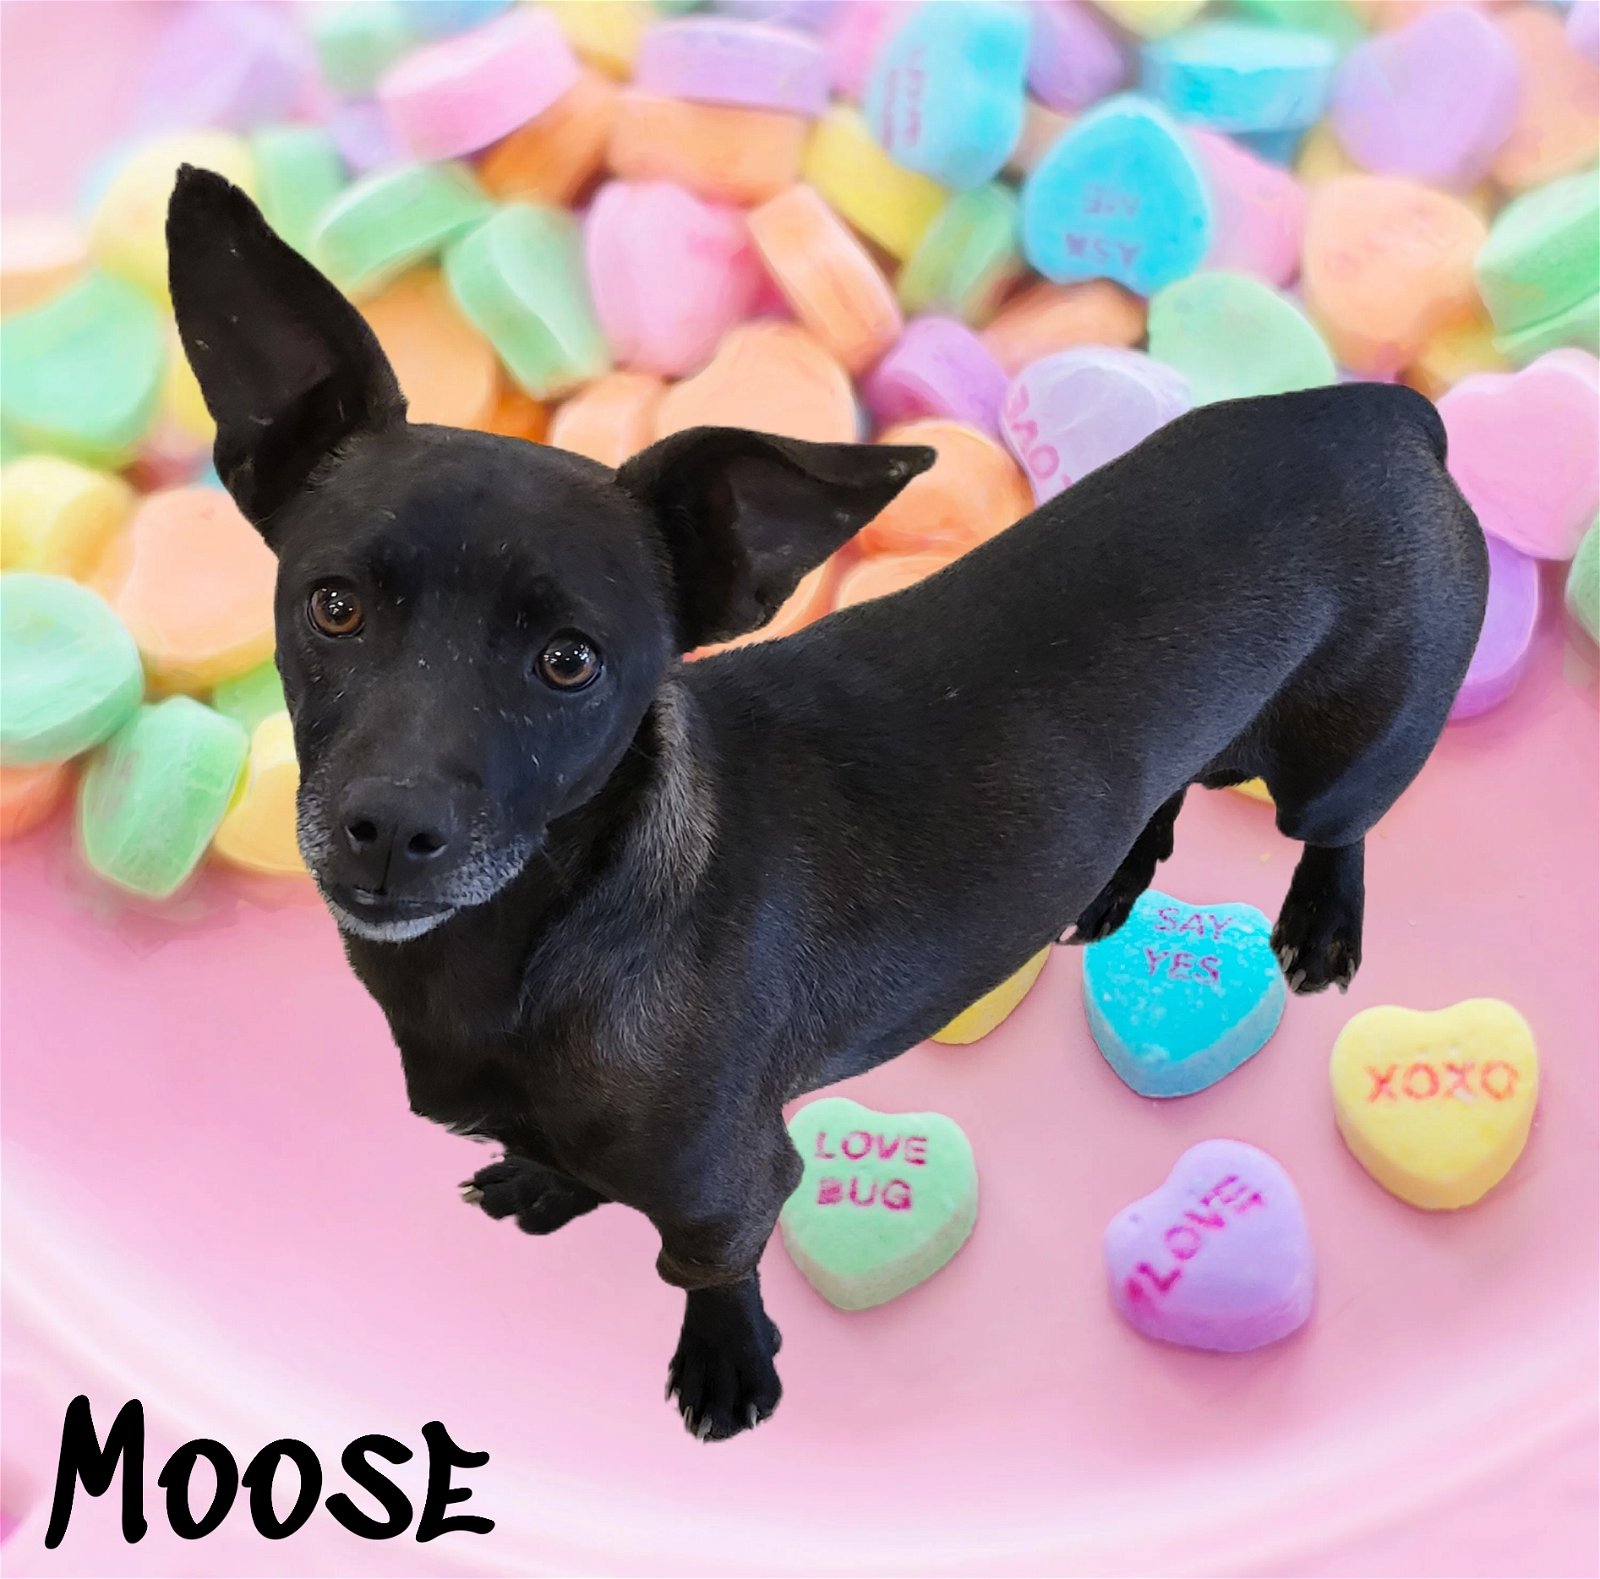 adoptable Dog in Phelan, CA named Moose